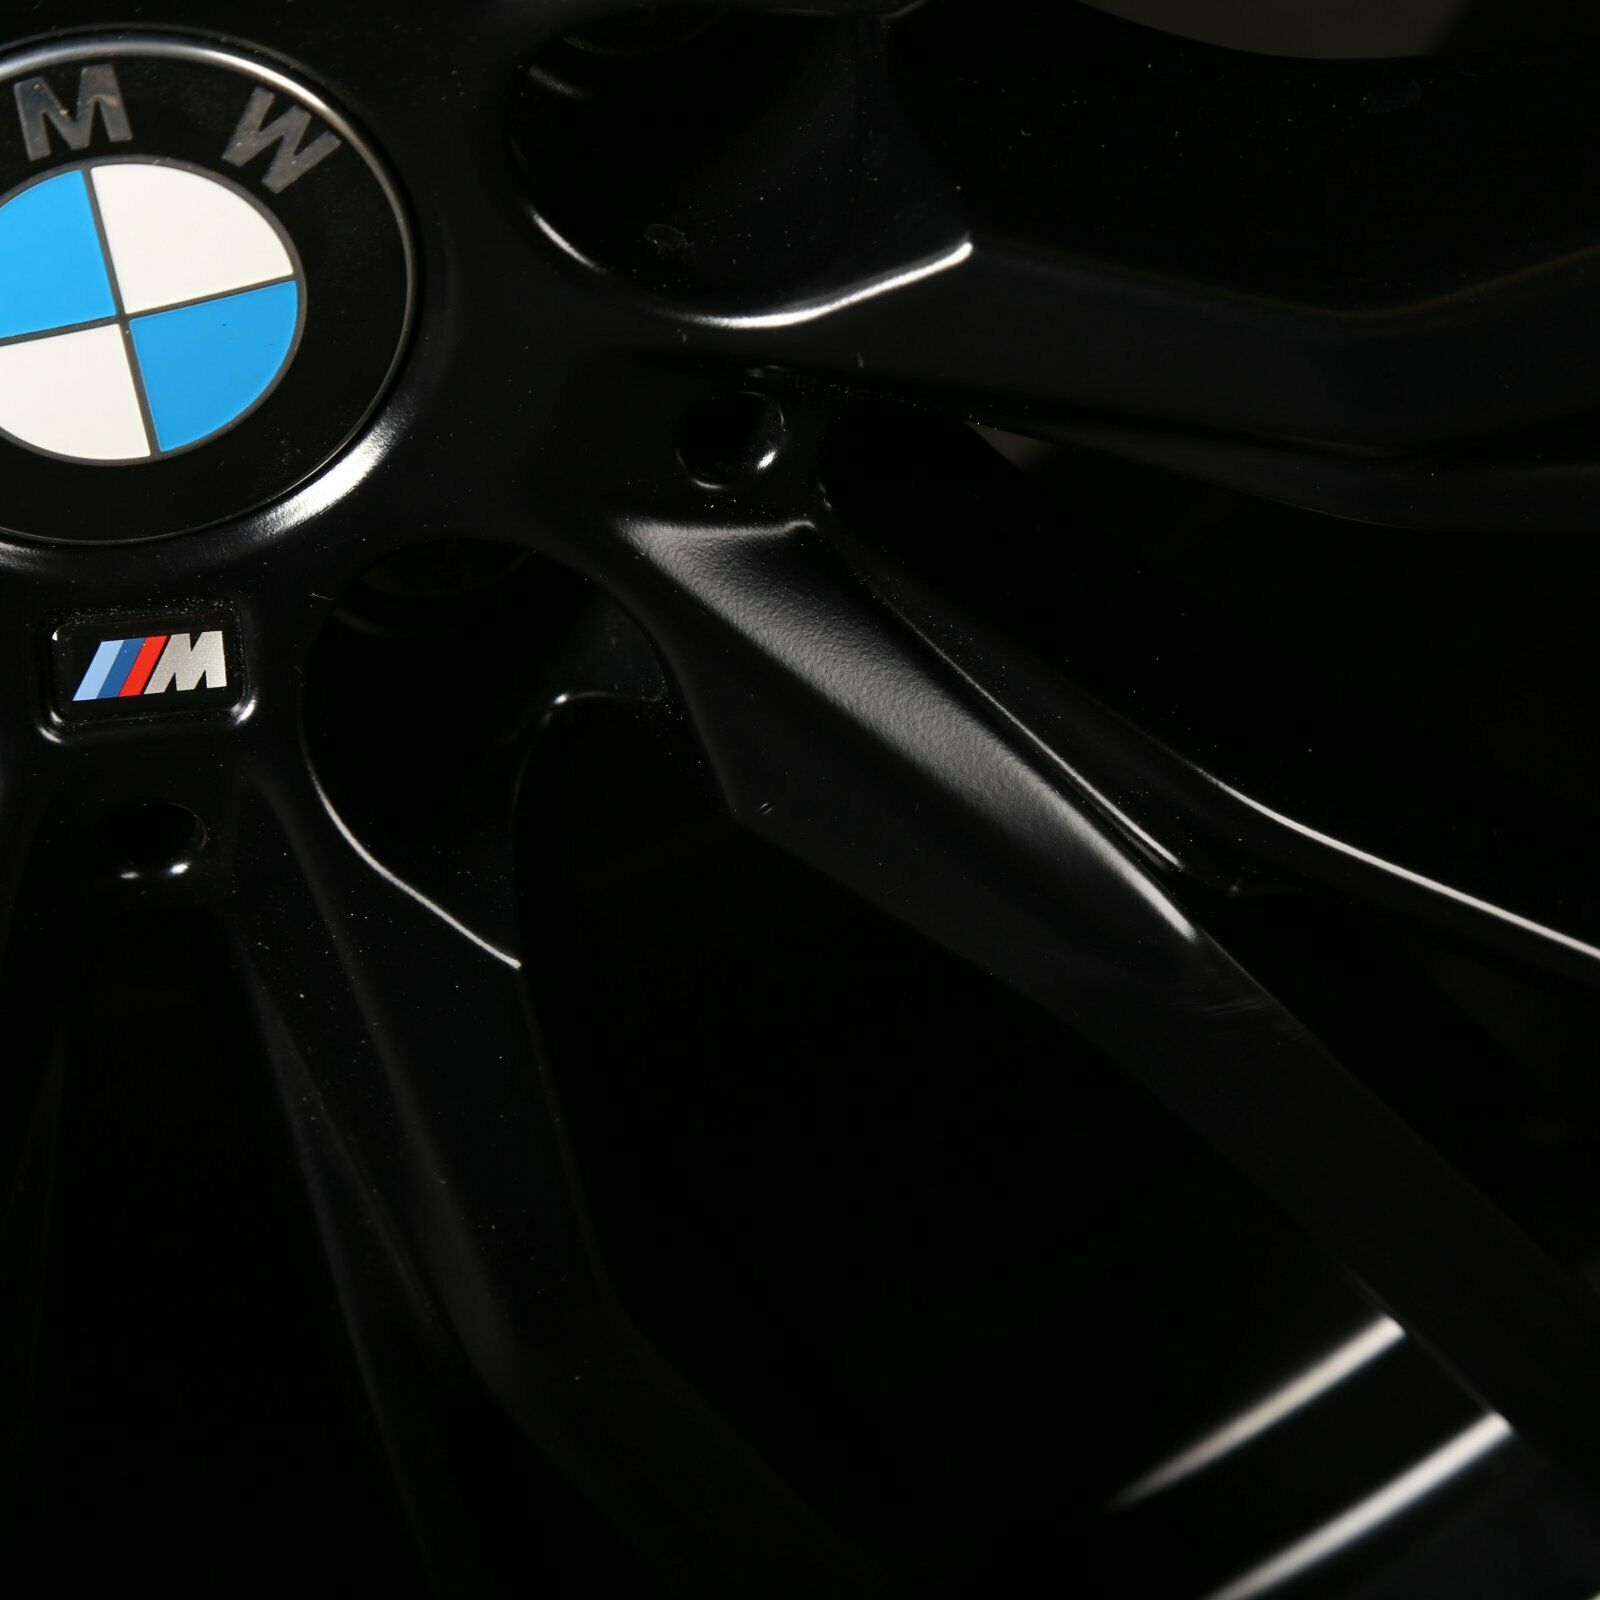 18 pouces jante alu BMW Série 3 Série 4 G20 G21 G22 G23 G26 Styling 796 M 8,5J x 18 ET 40